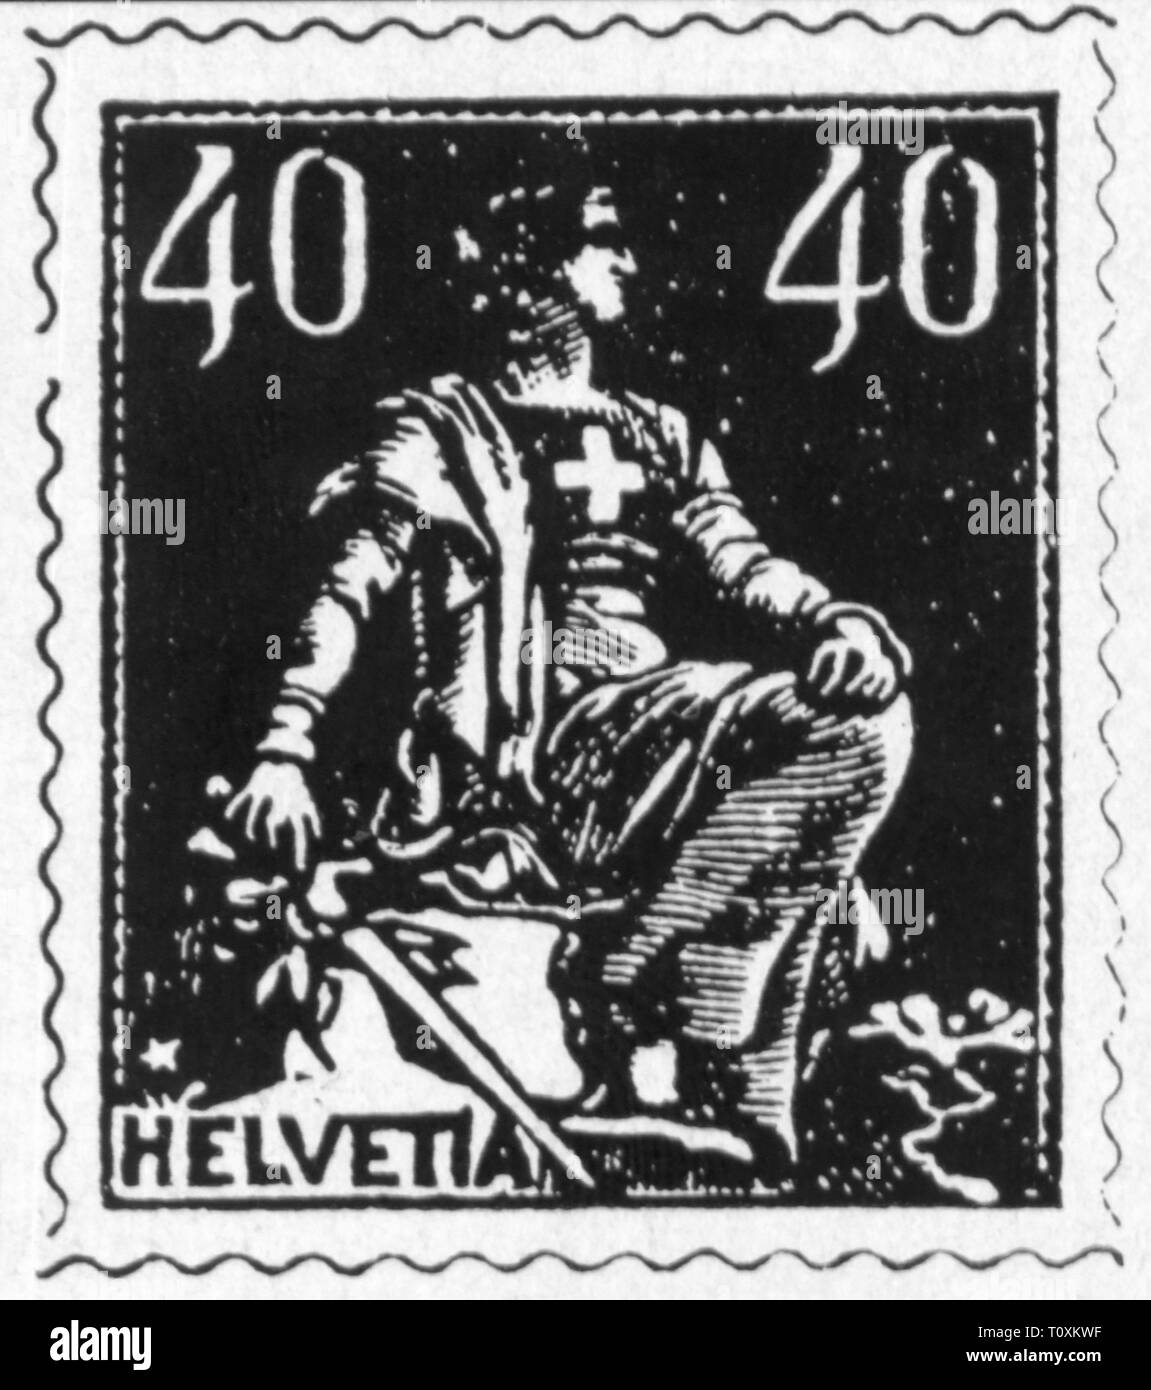 Mail, francobolli, Svizzera, 40 Rappen francobollo, serie Helvetia seduta, data di rilascio: novembre 1918, Additional-Rights-Clearance-Info-Not-Available Foto Stock